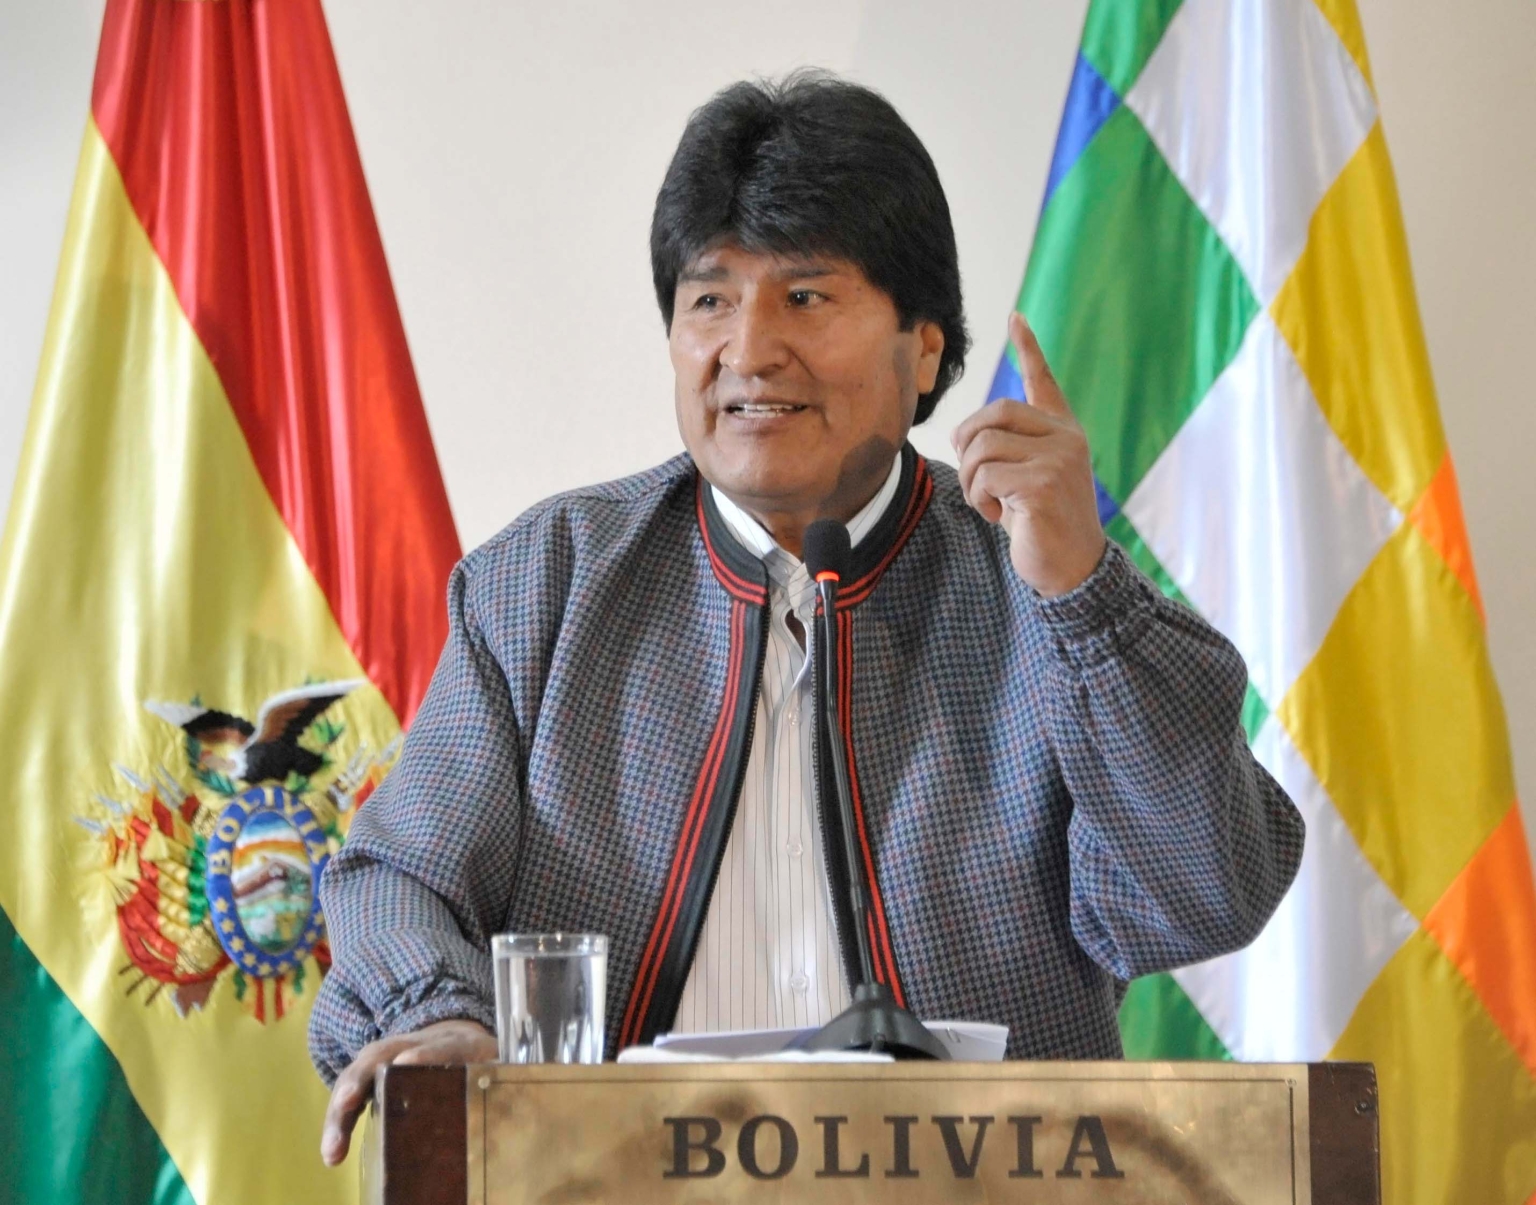 Ce centre permettra à notre pays de développer considérablement ses compétences scientifiques et technologiques», a déclaré le président bolivien, Evo Morales, lors de l’annonce d’un nouveau centre de recherche et de développement de la technologie nucléaire à El Alto.